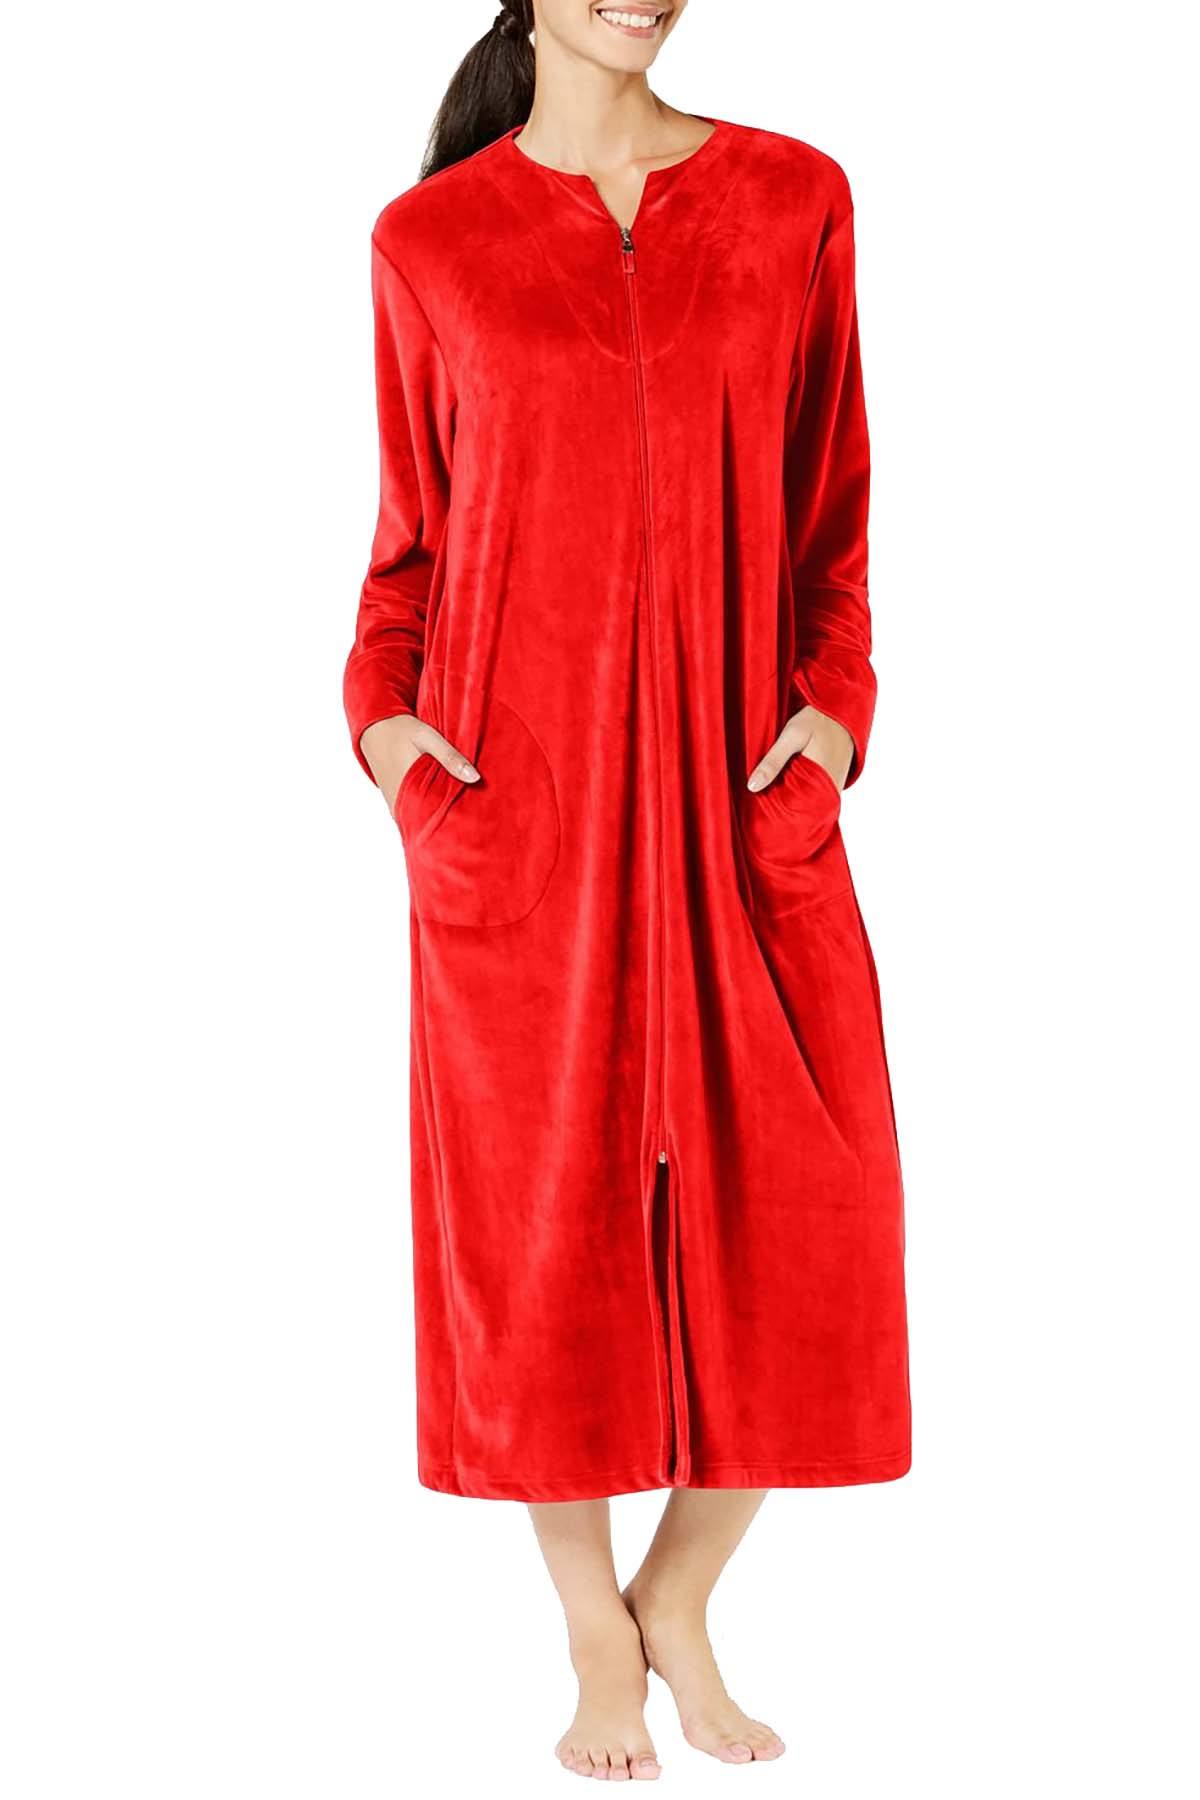 Miss Elaine Velvet Fleece Long Zip Robe in Red